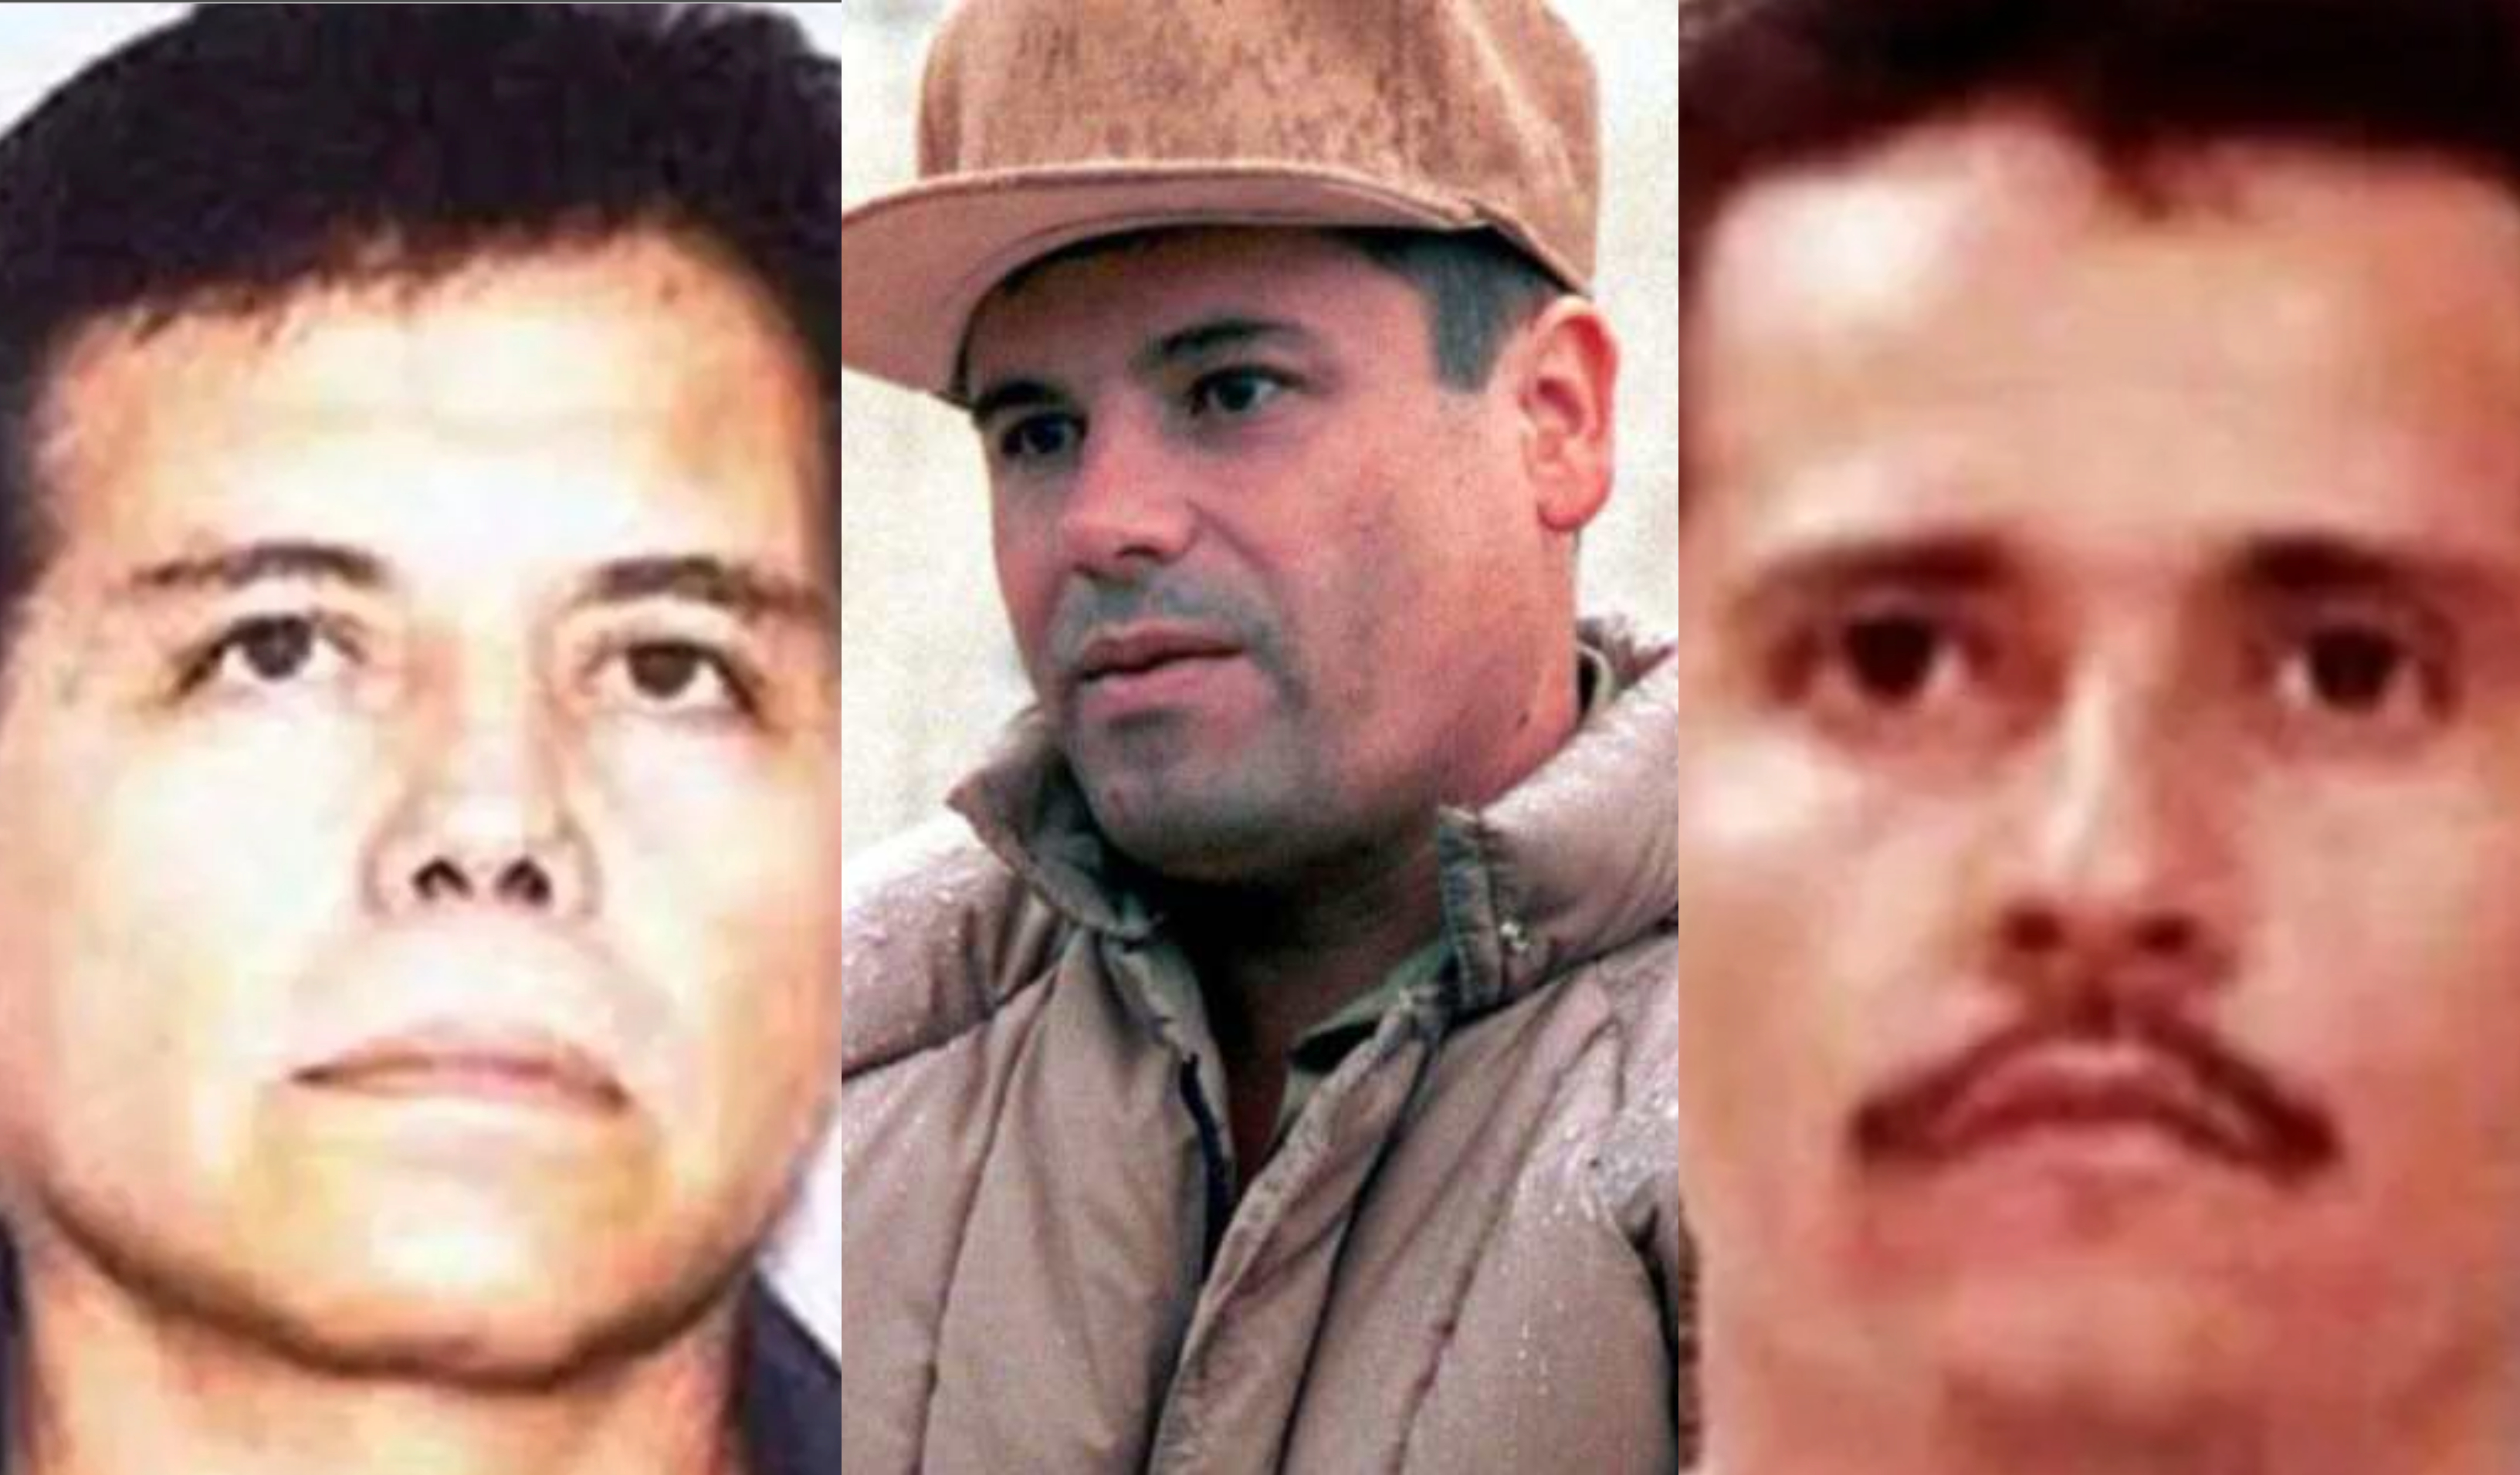 "El Mayo", "El Chapo" y "El Mencho" han sido la cara del narcotráfico en México. (Foto Prensa Libre: Departamento de Estado de EE.UU, EFE y Hemeroteca PL)